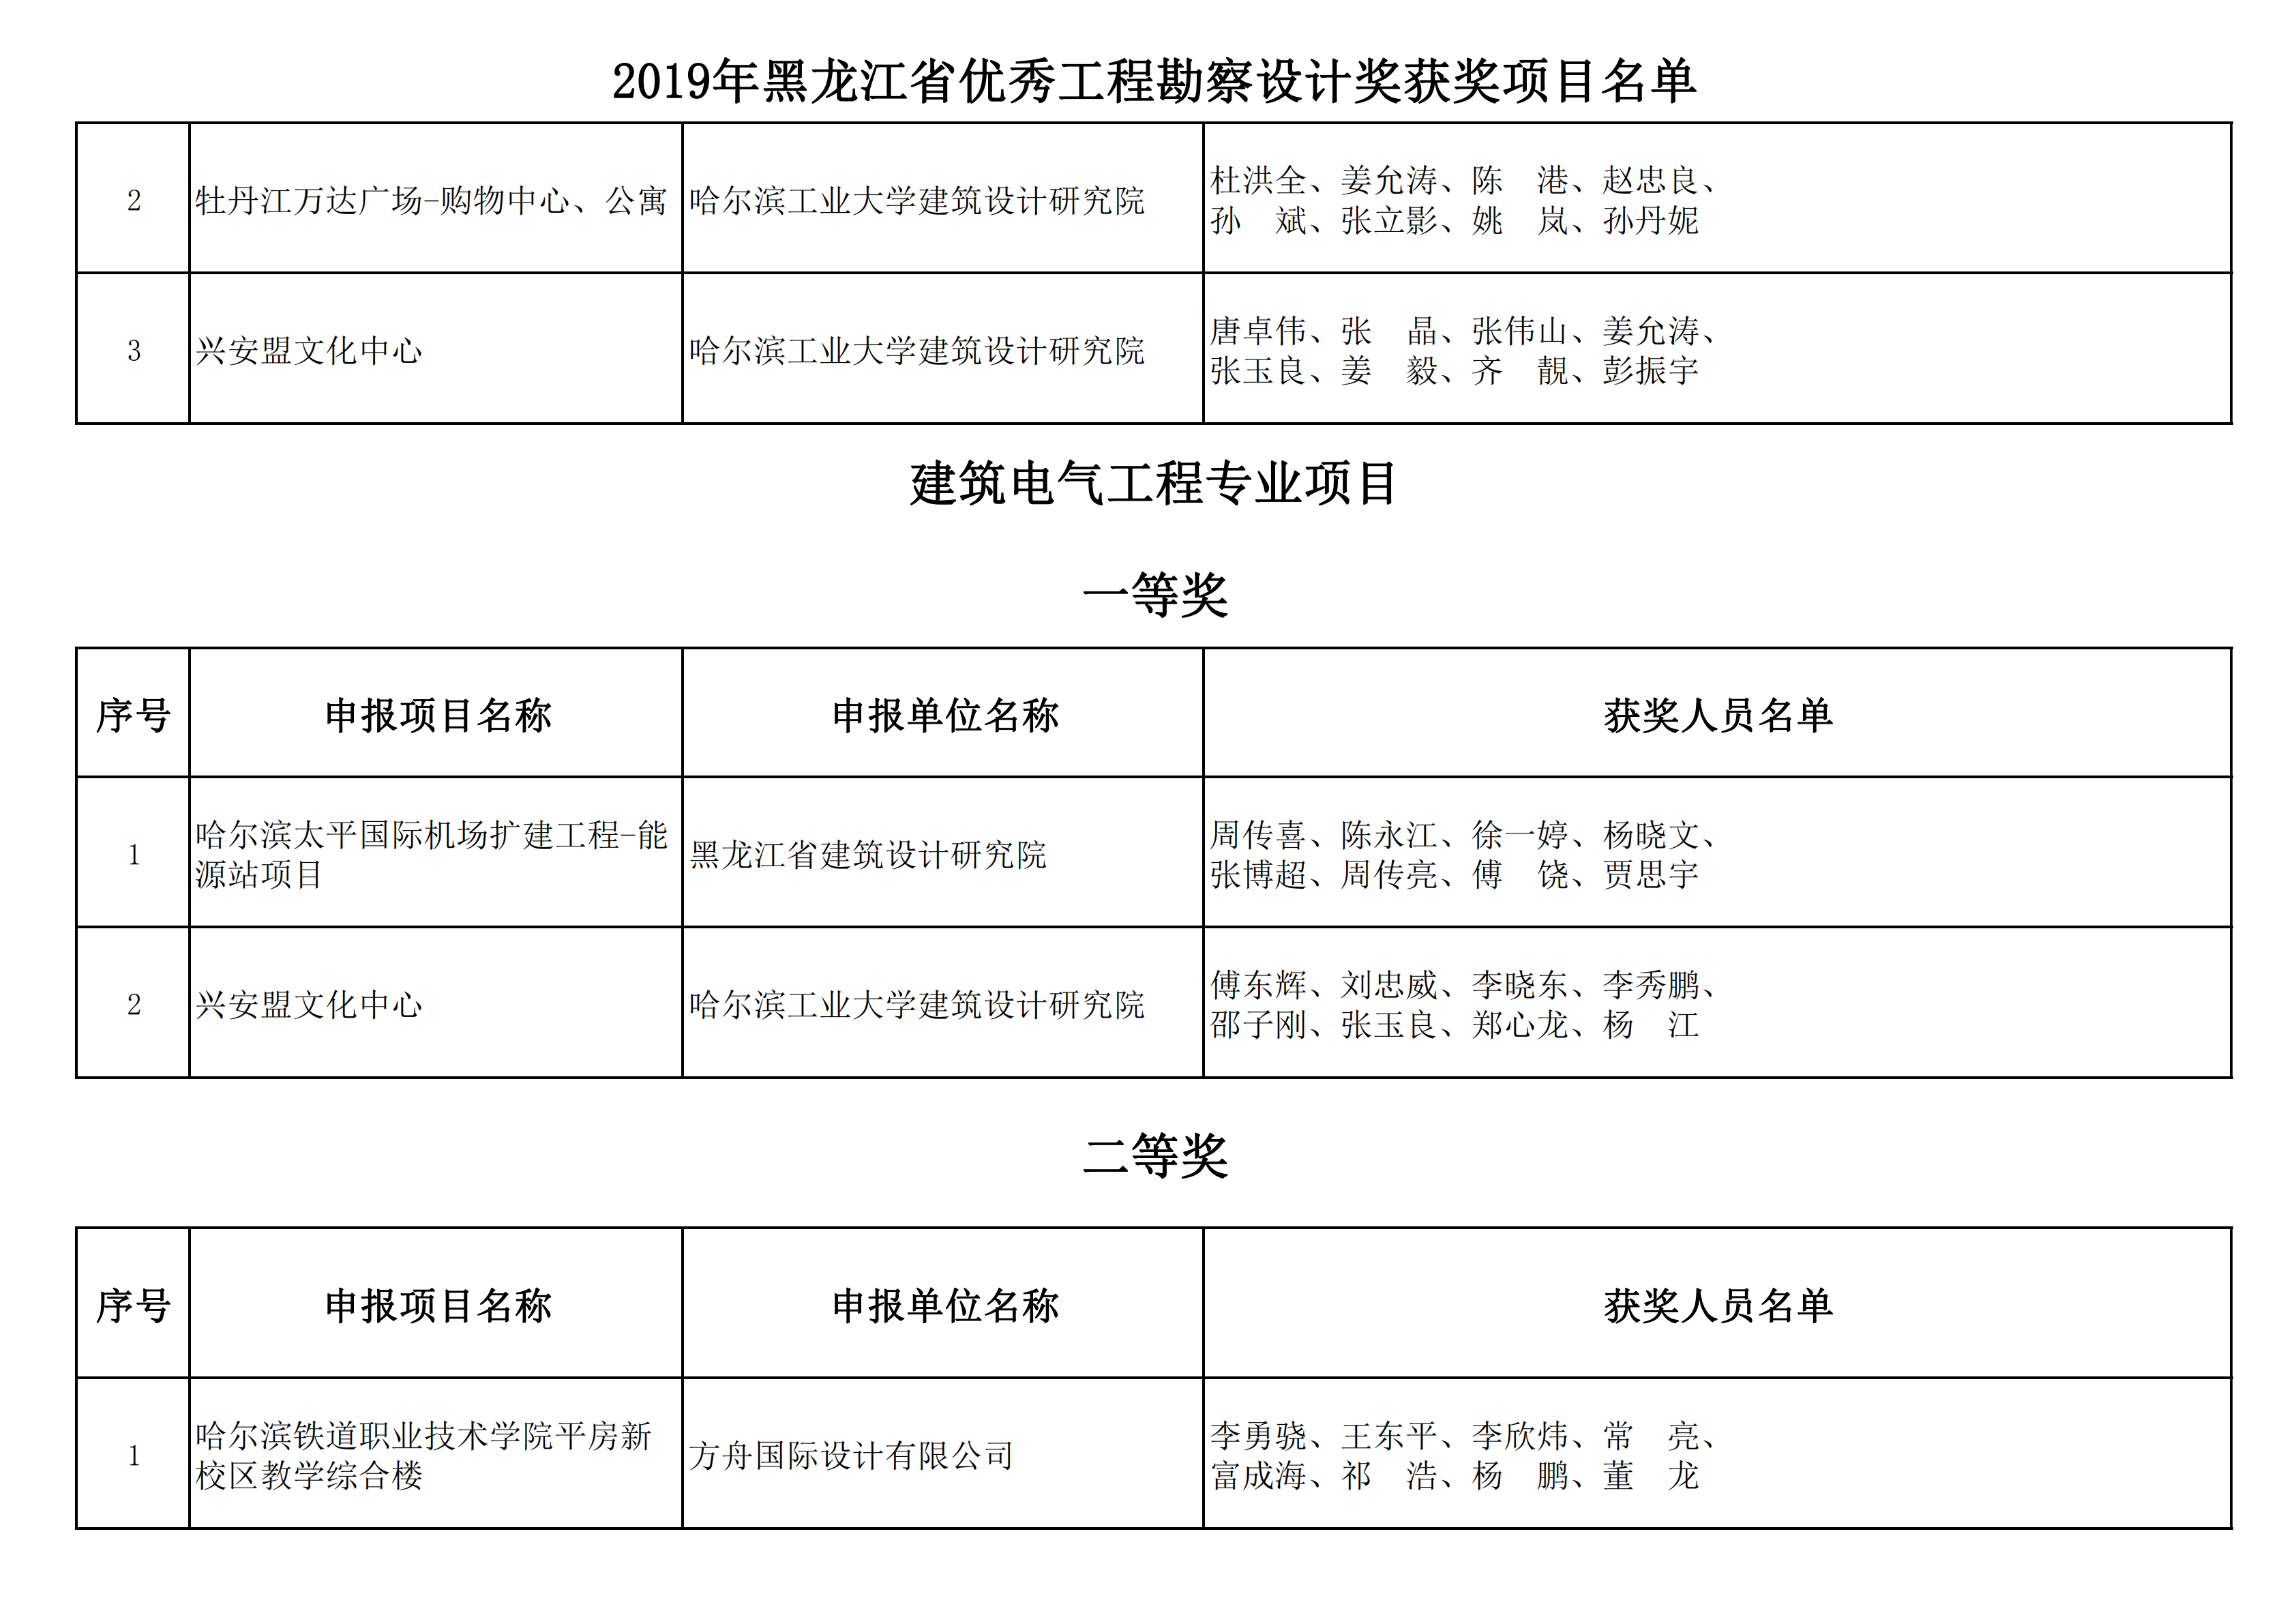 2019年黑龙江省优秀工程勘察设计奖获奖项目名单_07.png